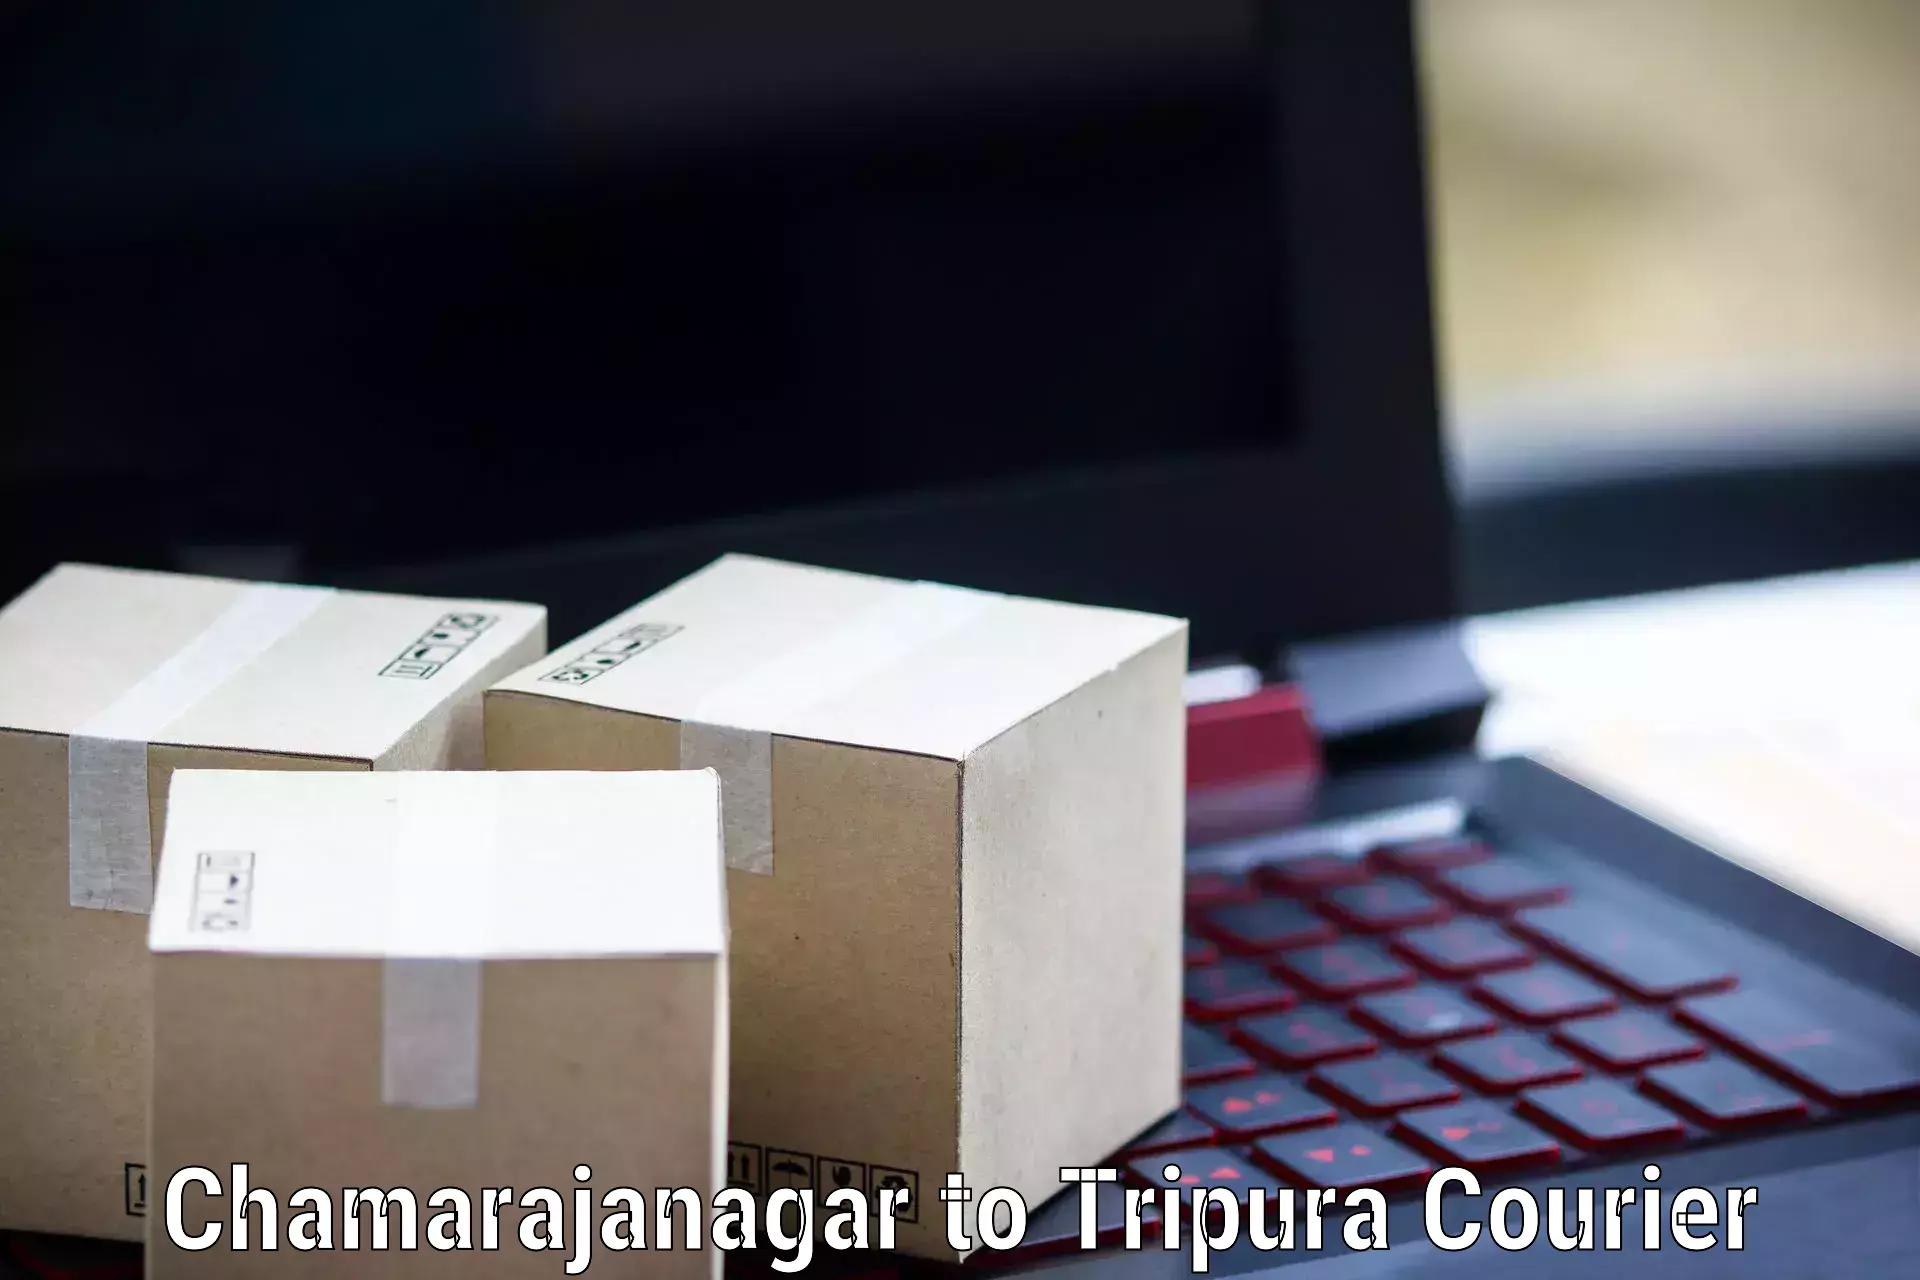 Ground shipping in Chamarajanagar to Agartala